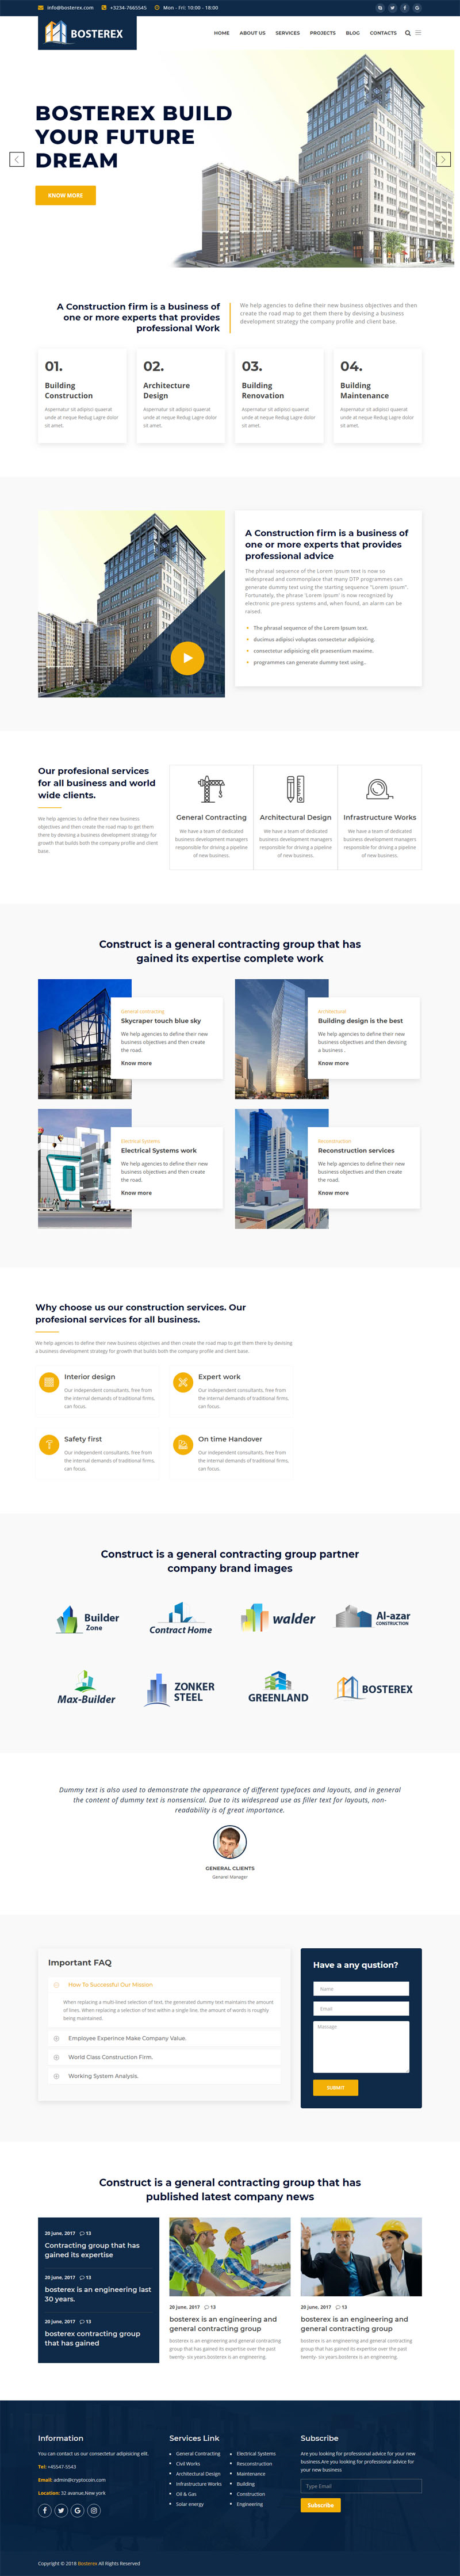 建筑业公司网站Bootstrap模板CSS框架-Bosterex5811